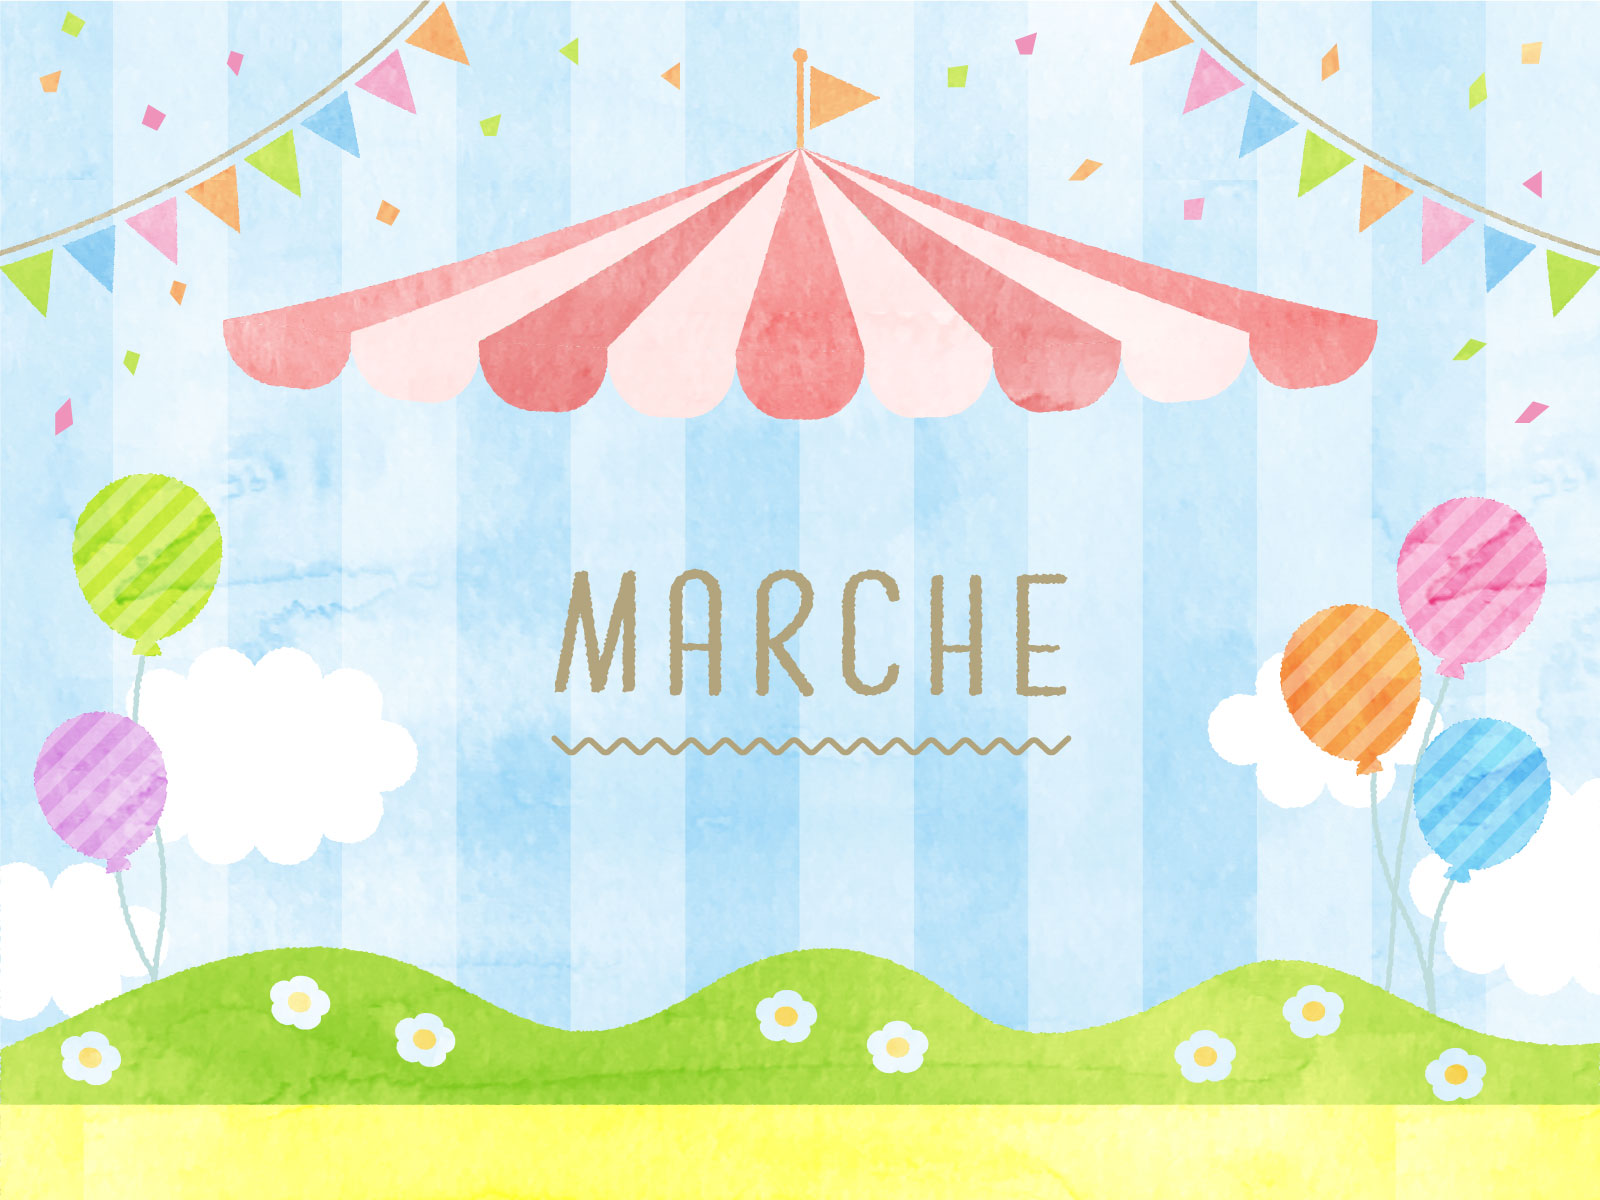 ＜3月20日＞大津市小野の絶景カフェ「ラ サンテ」にて癒しの体験やヨガ、グルメを楽しむ『Spring Marche』が開催されます！